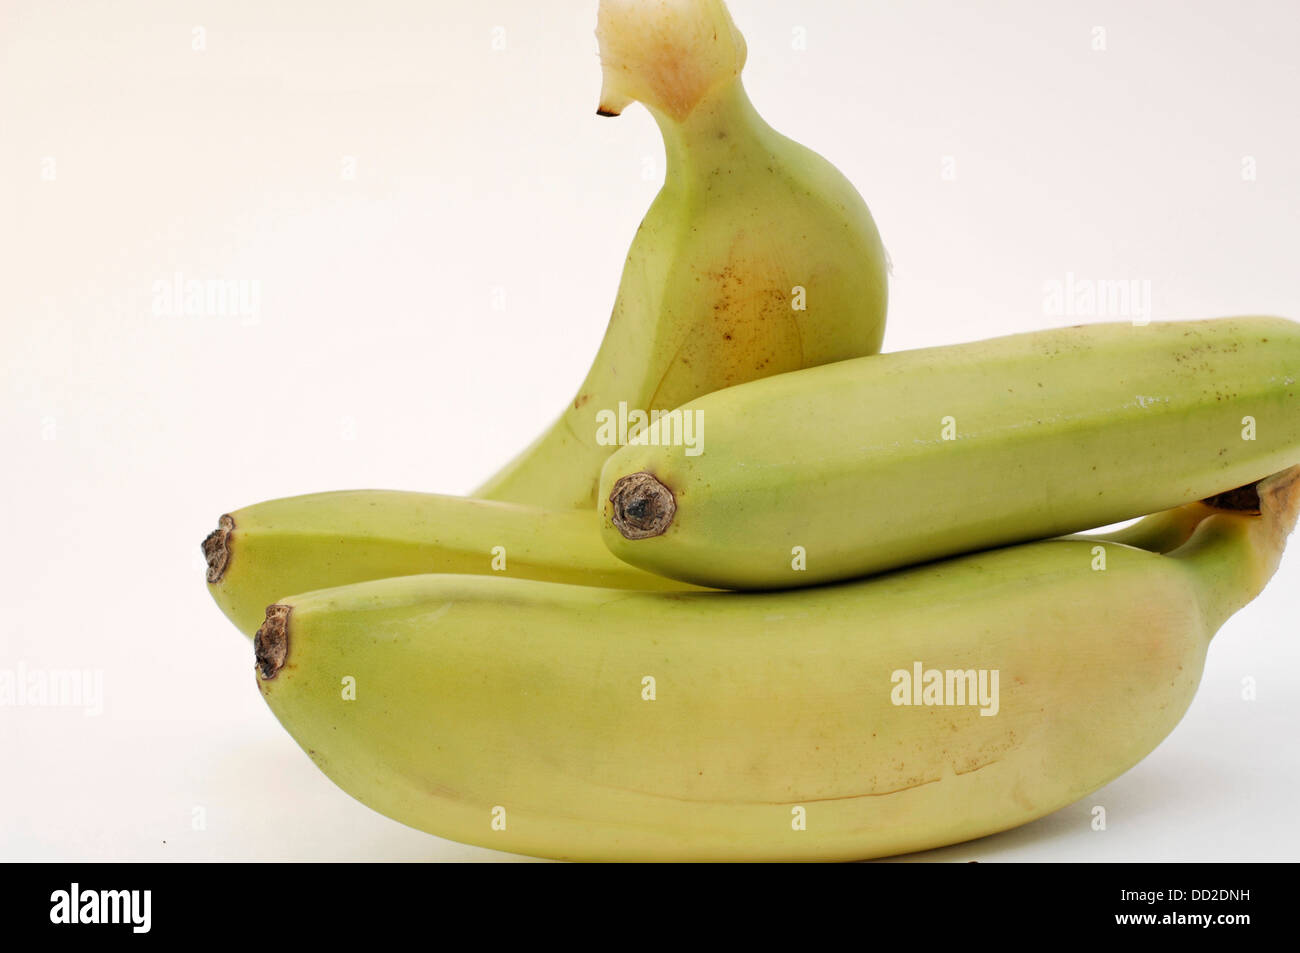 ripe fresh bananas Stock Photo